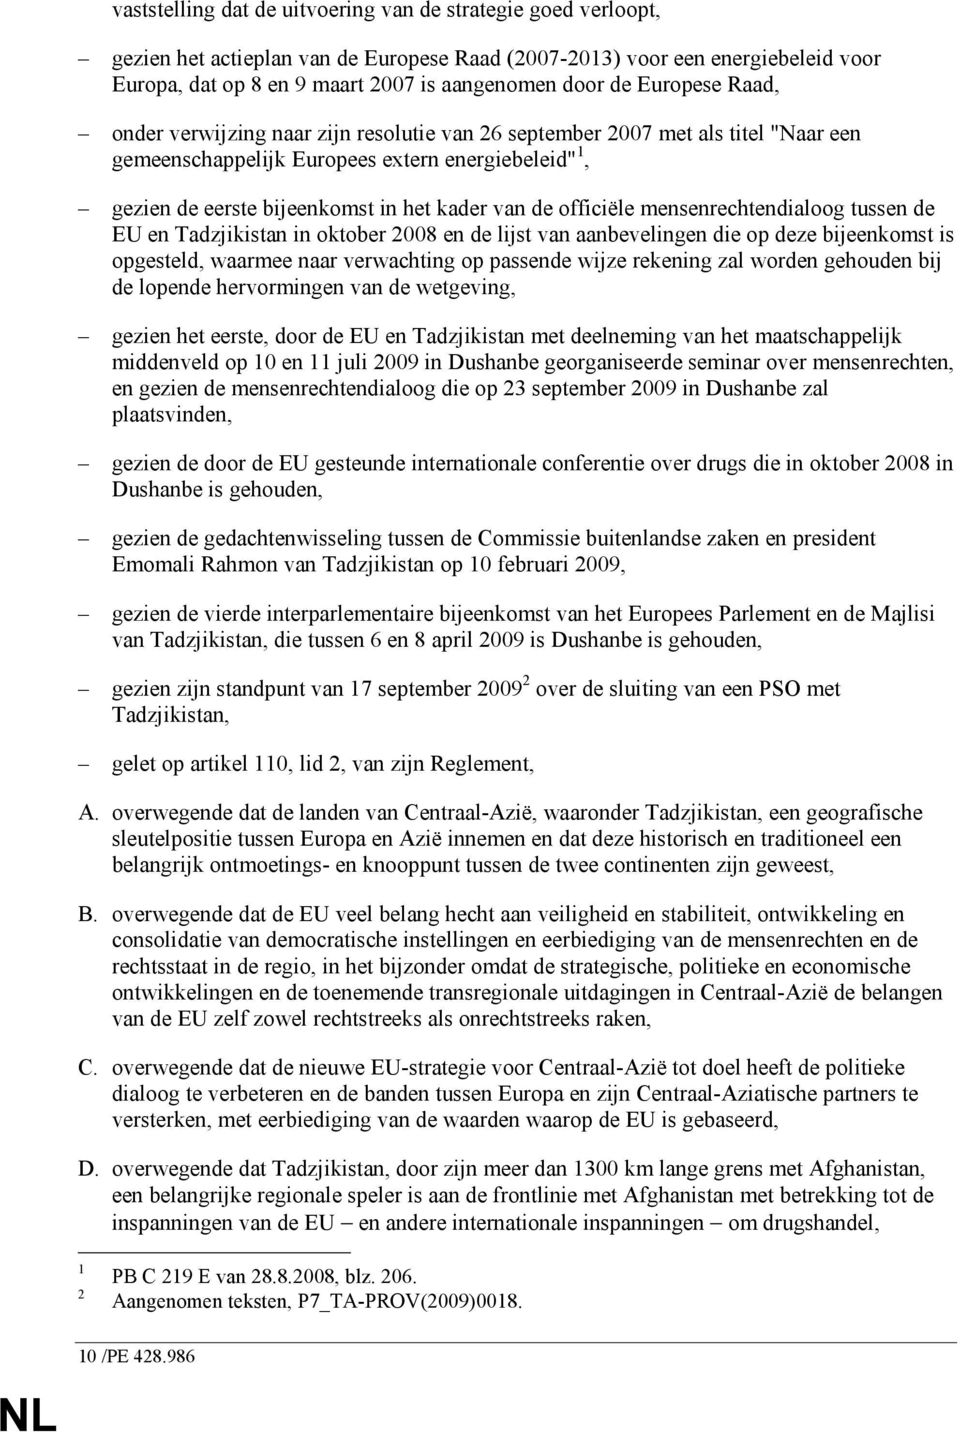 officiële mensenrechtendialoog tussen de EU en Tadzjikistan in oktober 2008 en de lijst van aanbevelingen die op deze bijeenkomst is opgesteld, waarmee naar verwachting op passende wijze rekening zal